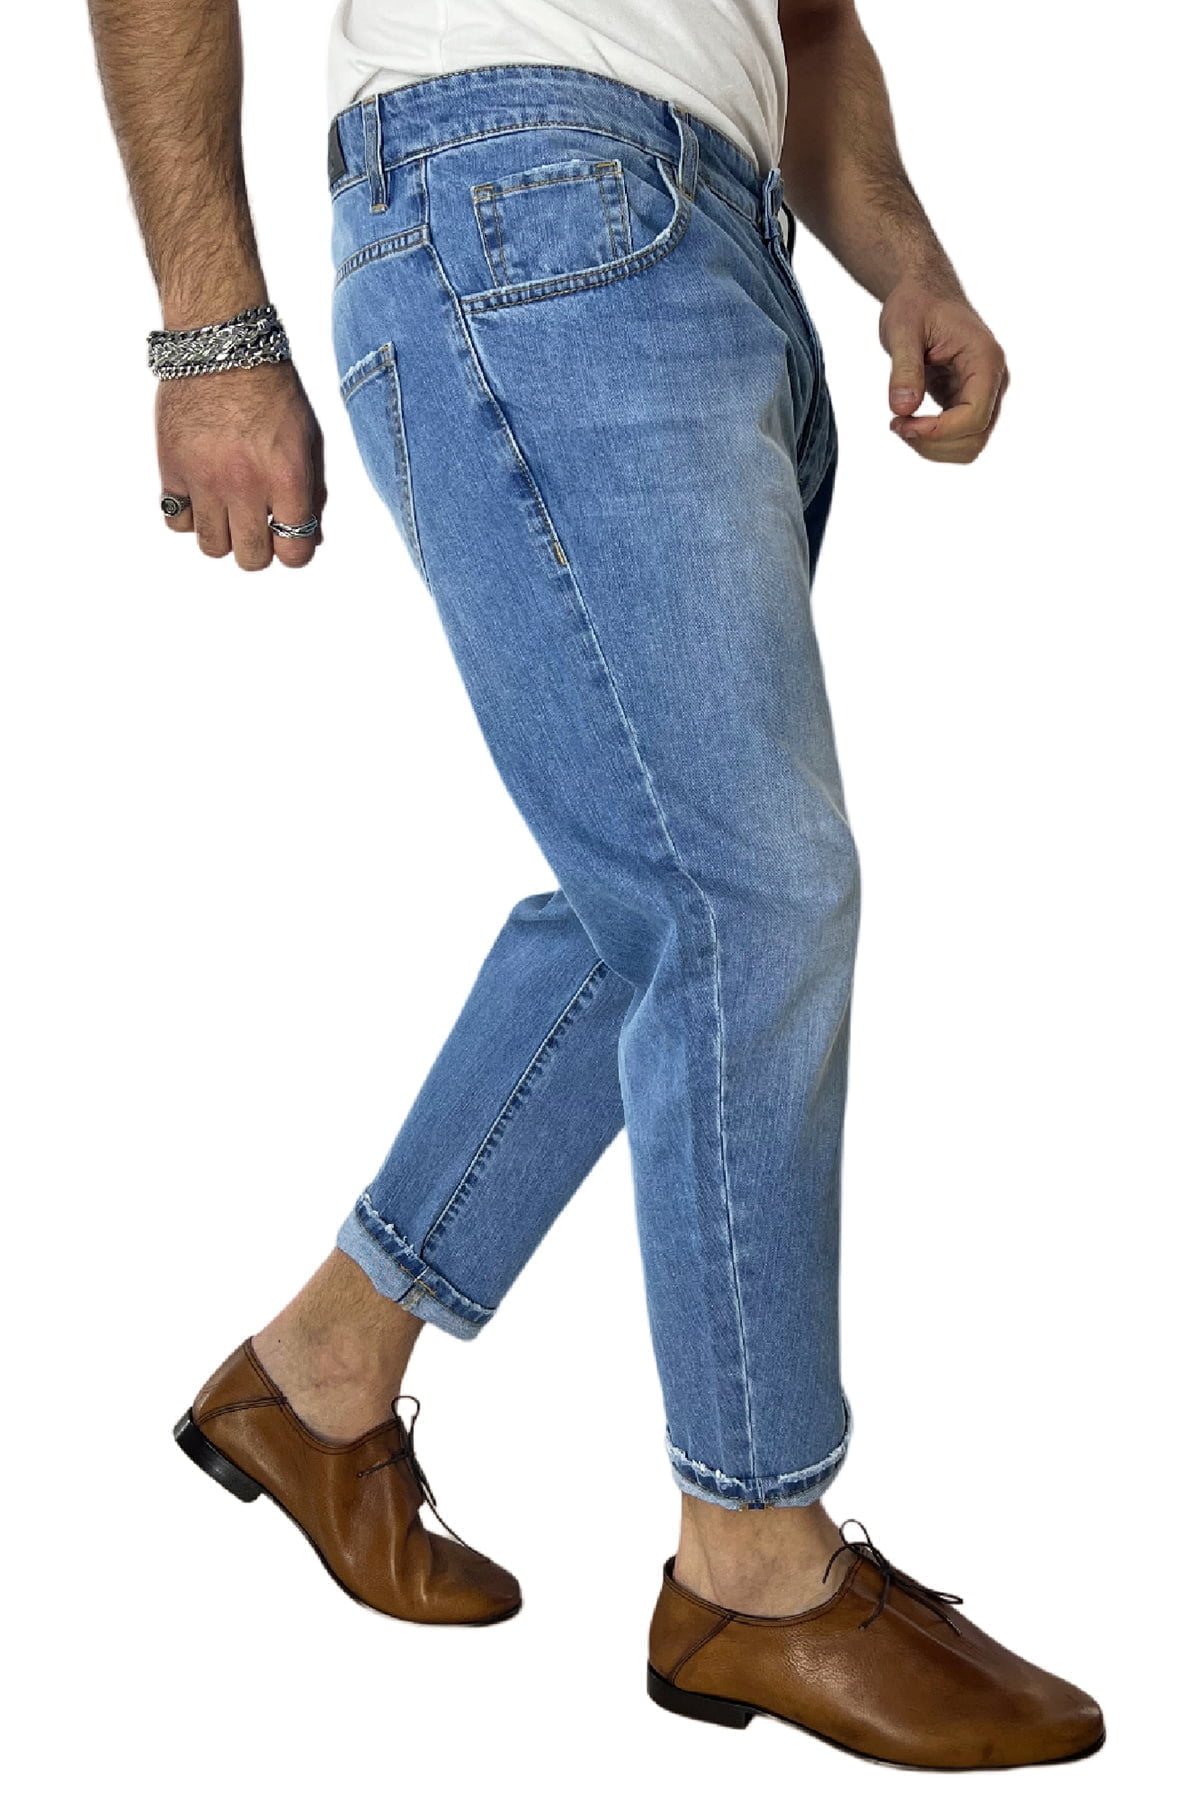 Jeans da uomo lavaggio chiaro modello 5 tasche regular fit made in italy